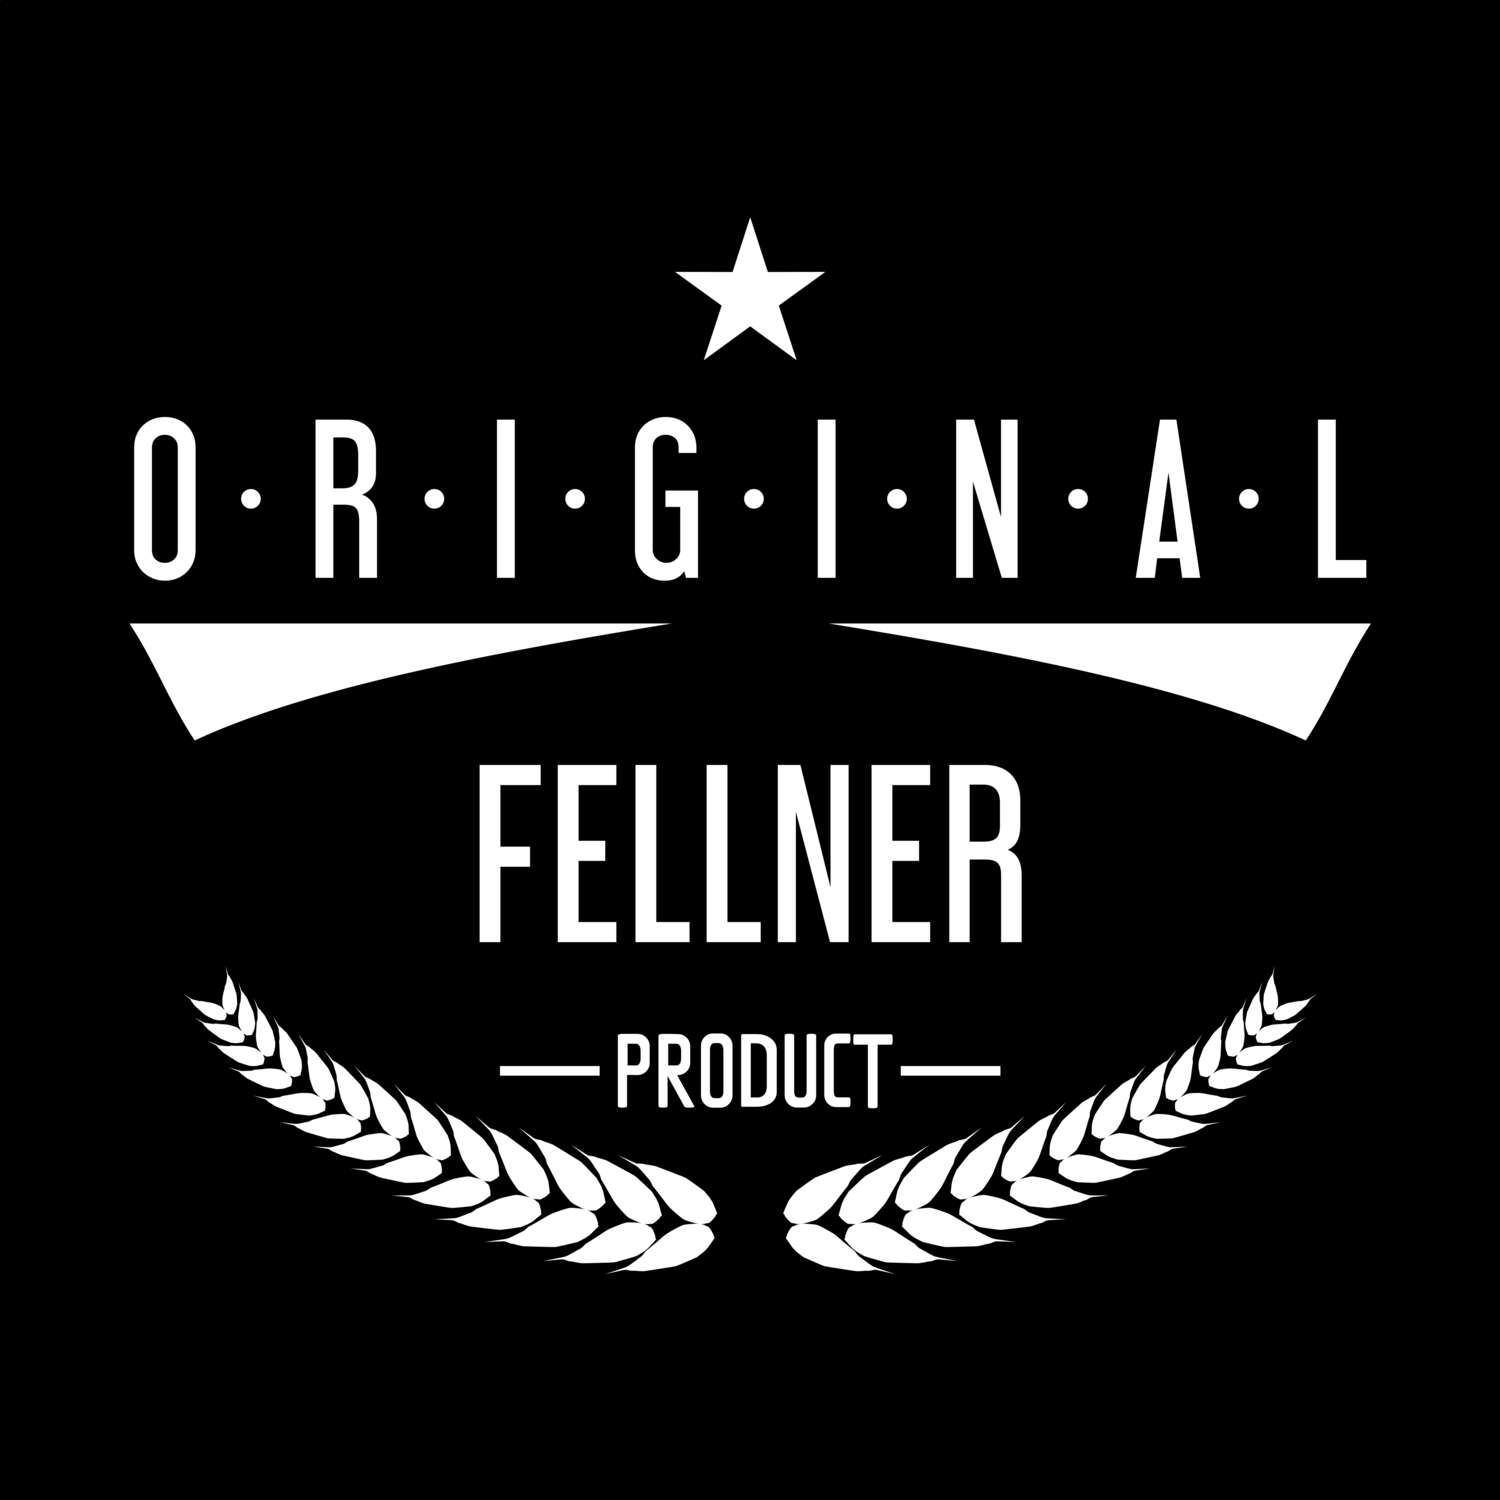 Fellner T-Shirt »Original Product«